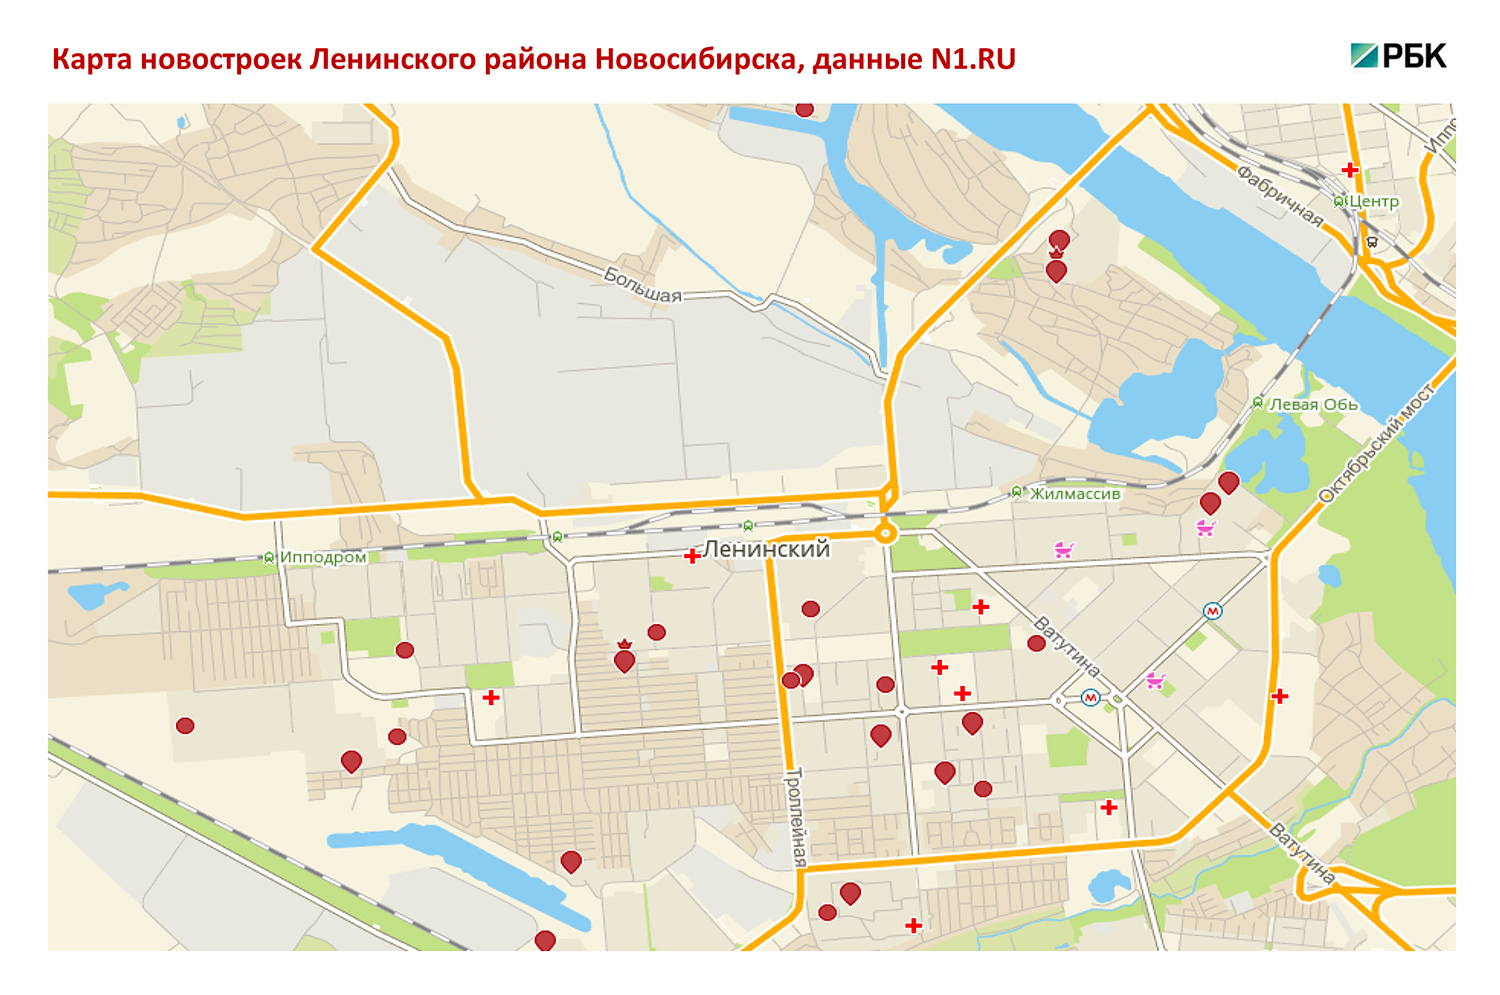 Новостройки Ленинского района Новосибирска: цены, детали, тенденции 